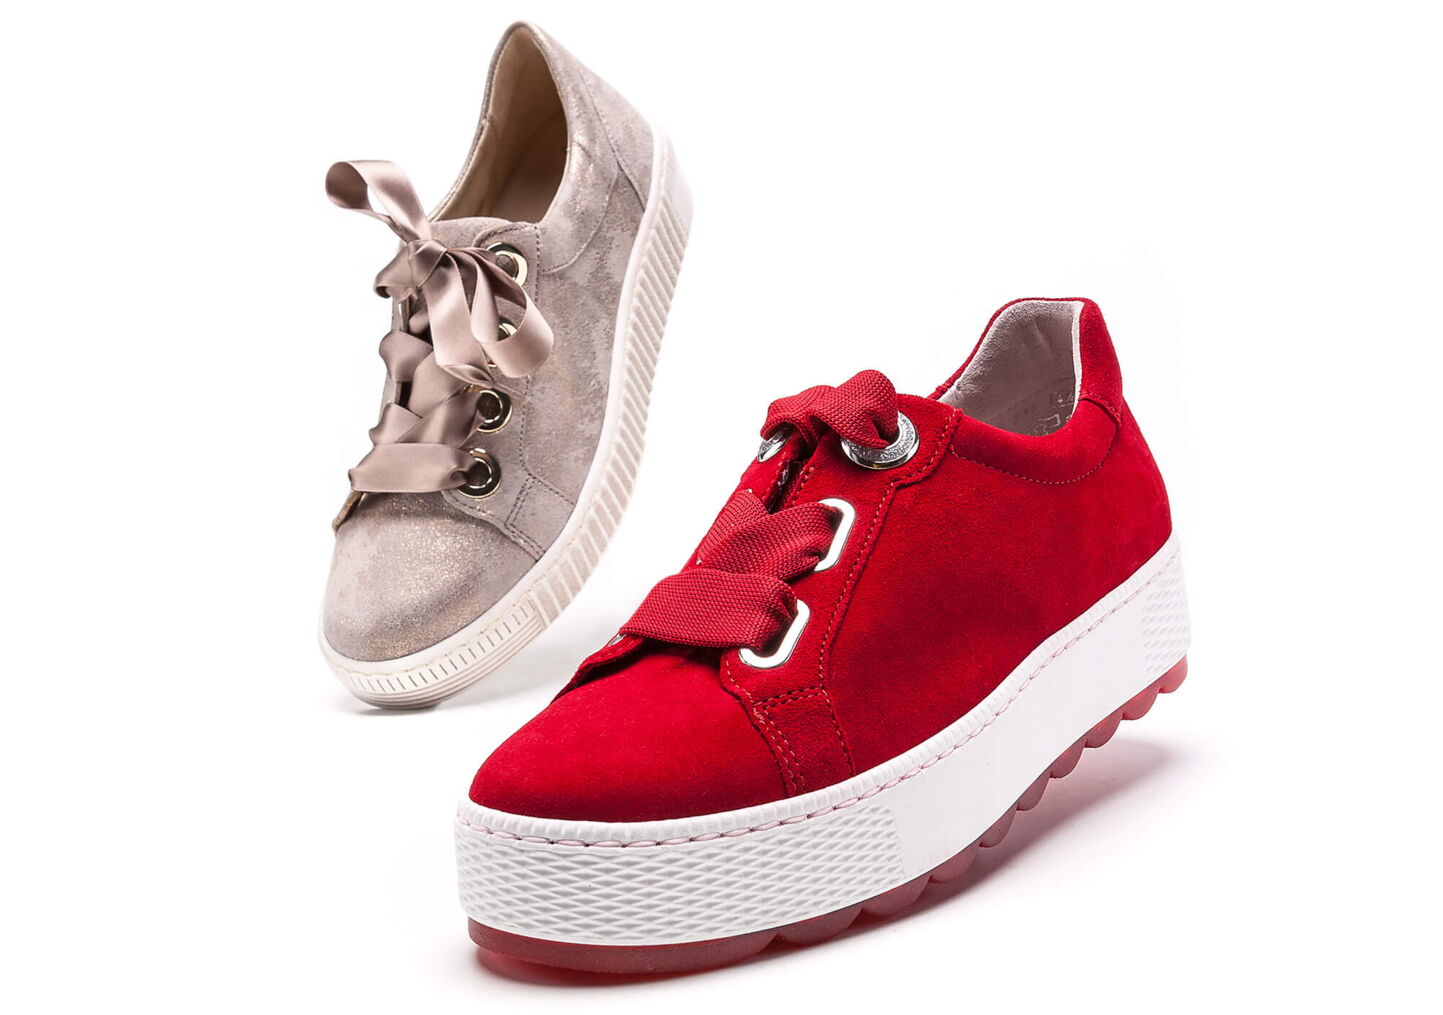 Werbeofotografie: Hellbrauner und rotem Sneaker auf weissem Hintergrund